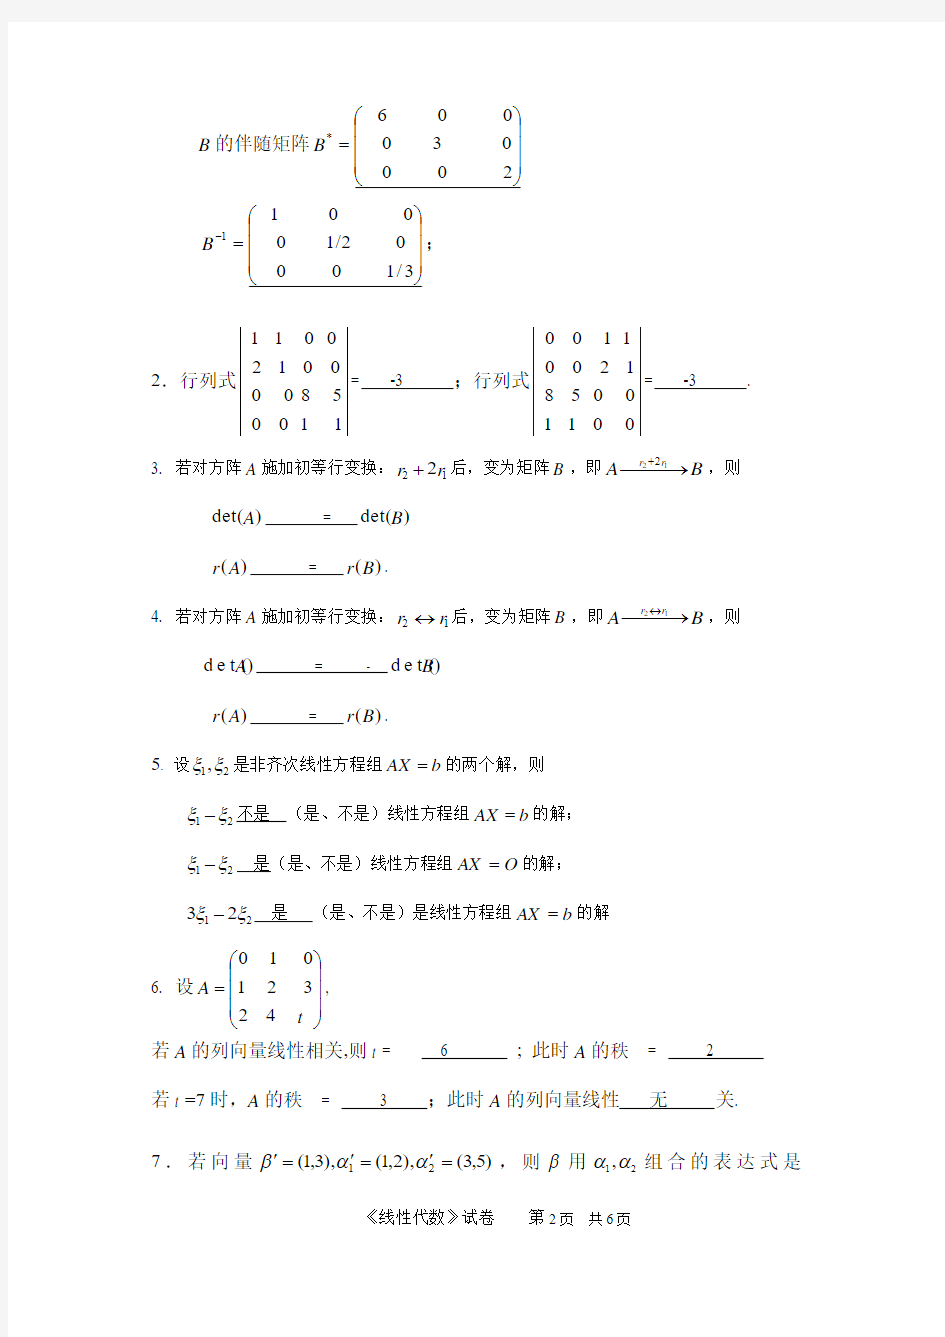 东莞理工学院 线性代数试卷2010A答案(终稿)